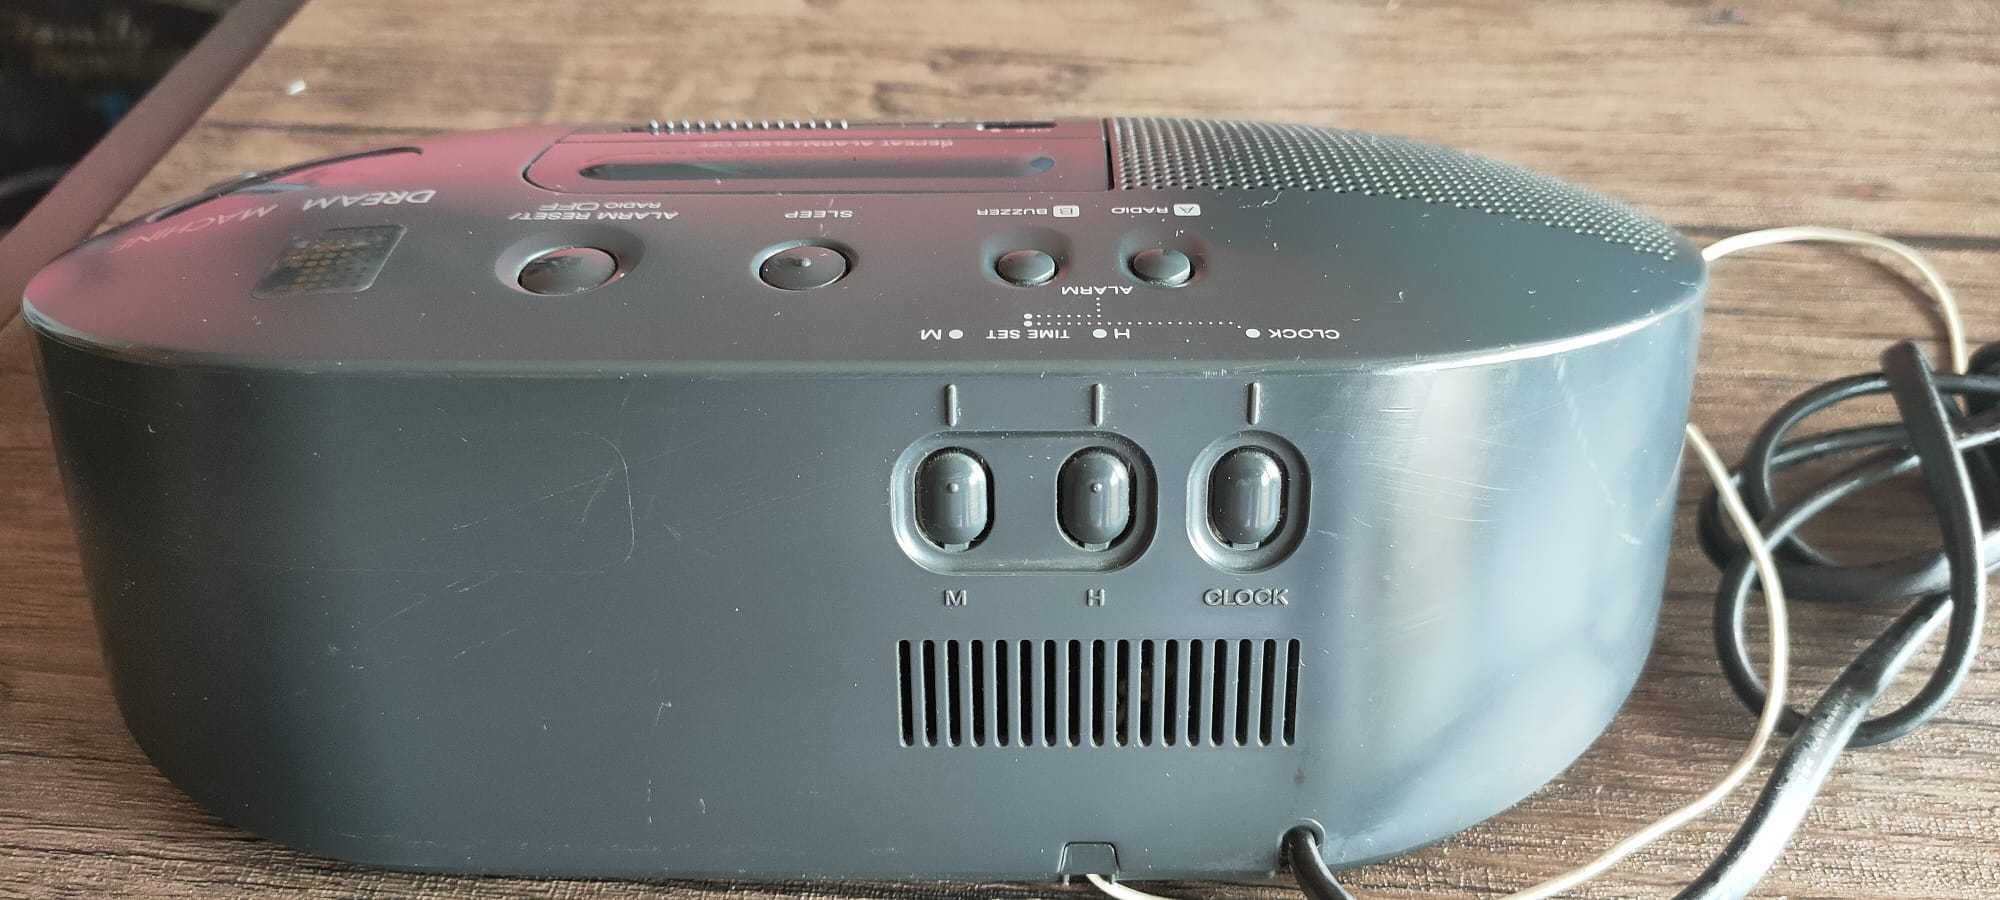 SONY ICF-C710 Dream Machine AM/FM Dual Alarm Digital Radio